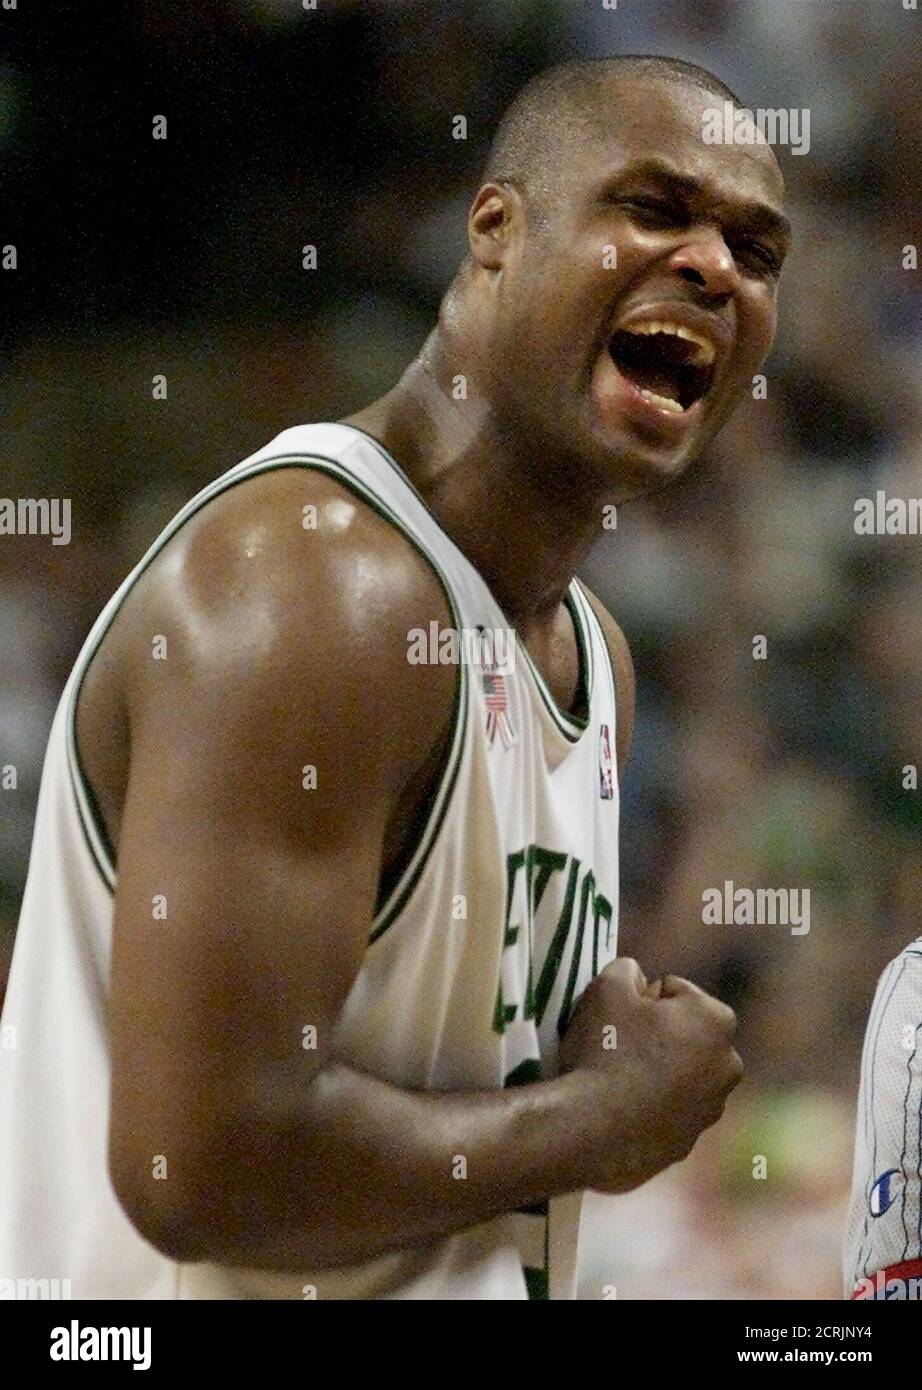 Boston Celtics Co-Kapitän Antoine Walker schreit in der Feier in der letzten Minute der Celtics 93-85 Sieg über die Philadelphia 76ers in Spiel 2 ihrer ersten Runde NBA Playoff-Serie 25. April 2002 in Boston. Walker hatte 24 Punkte im Spiel. REUTERS/Jim Bourg JRB Stockfoto